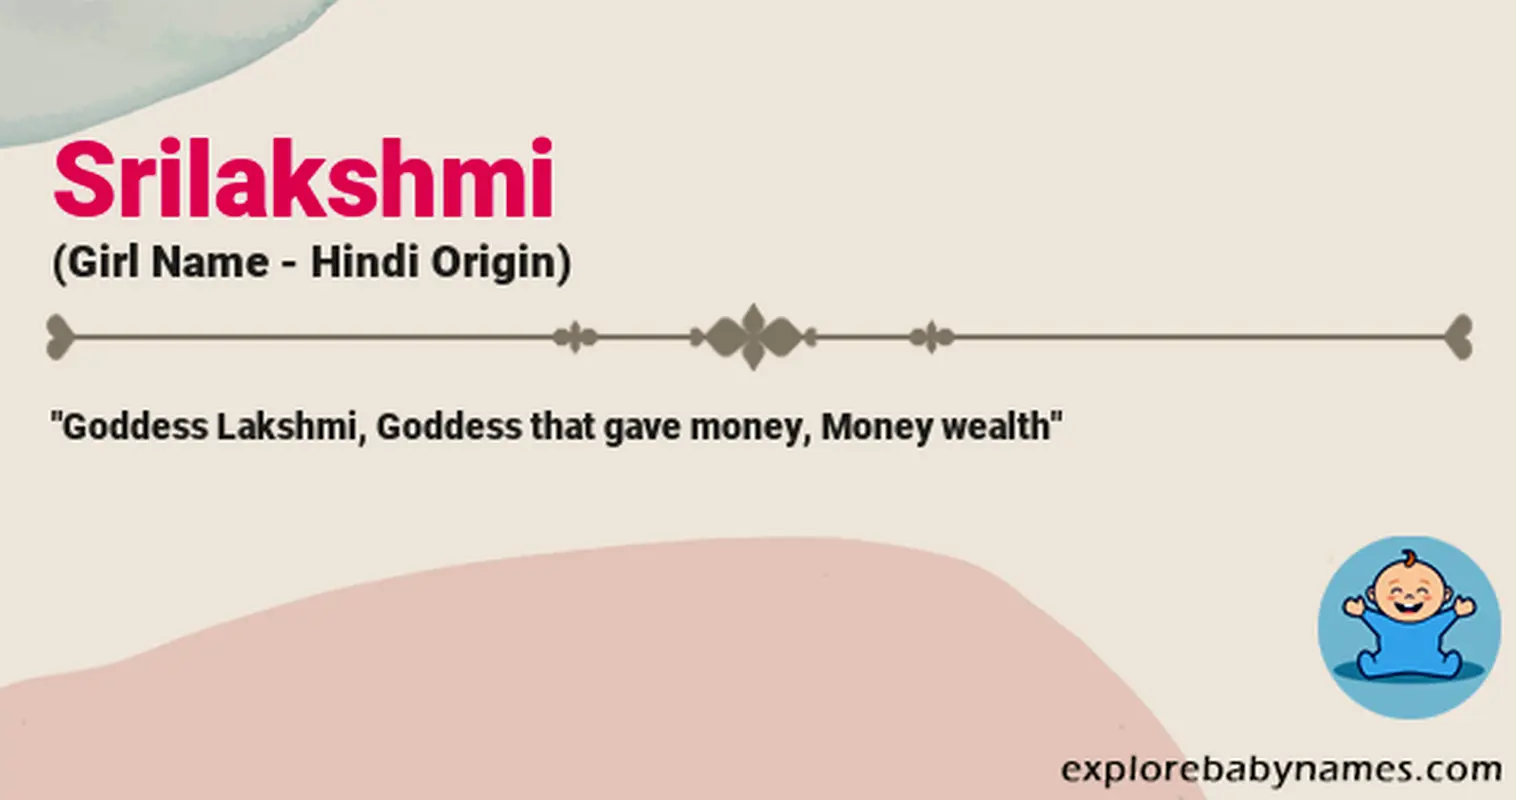 Meaning of Srilakshmi